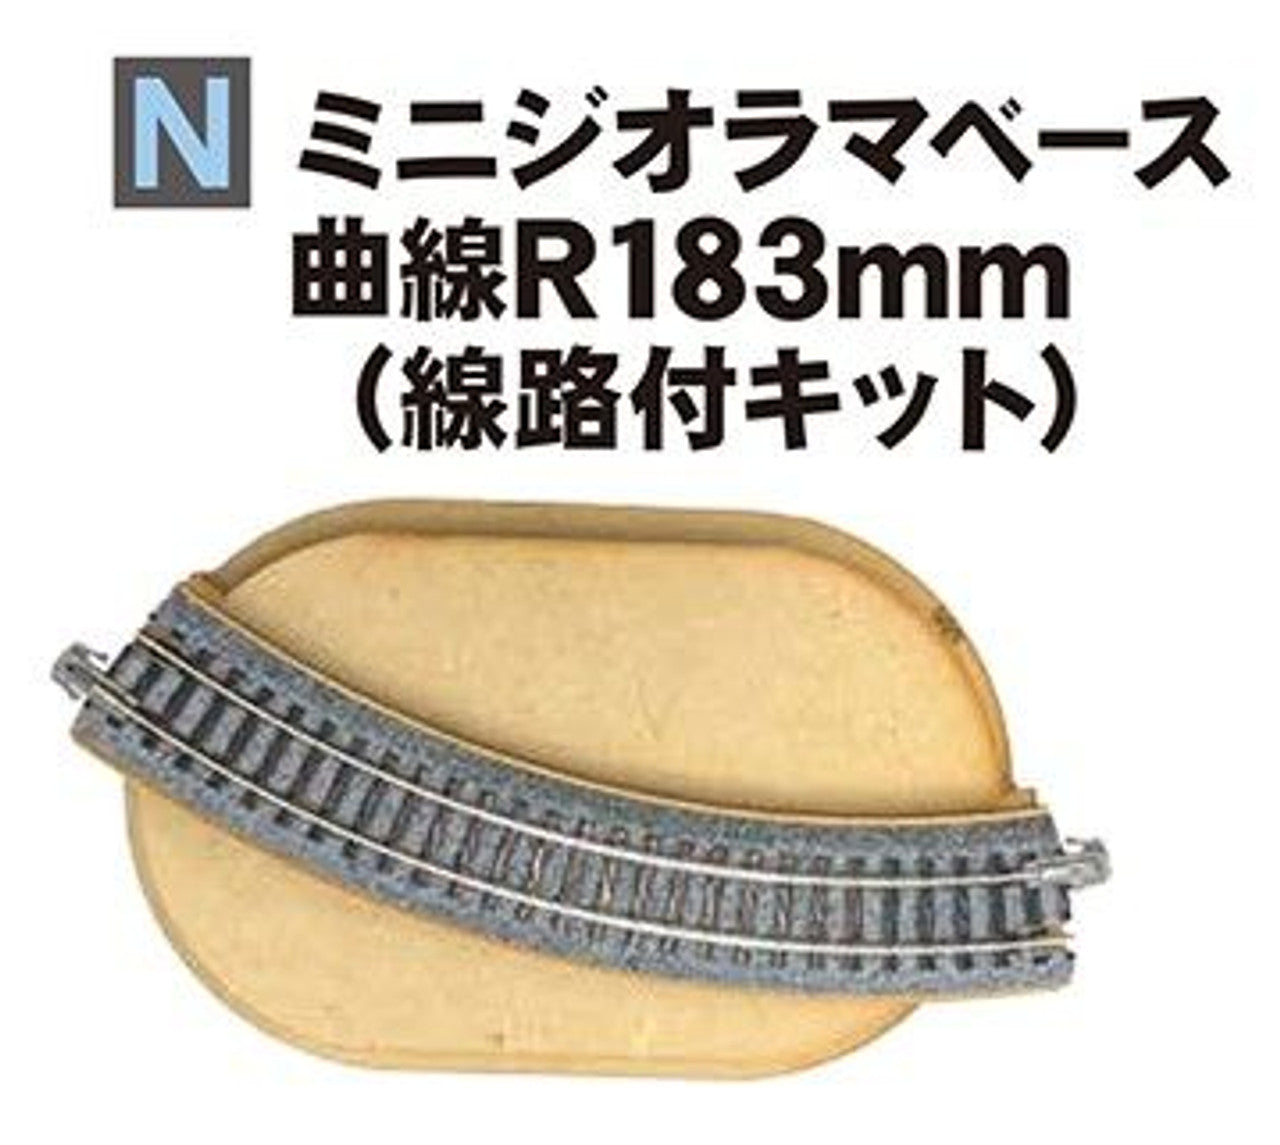 Kato 24-052 Mini Diorama Base Kit with 183mm Curve Track - BanzaiHobby